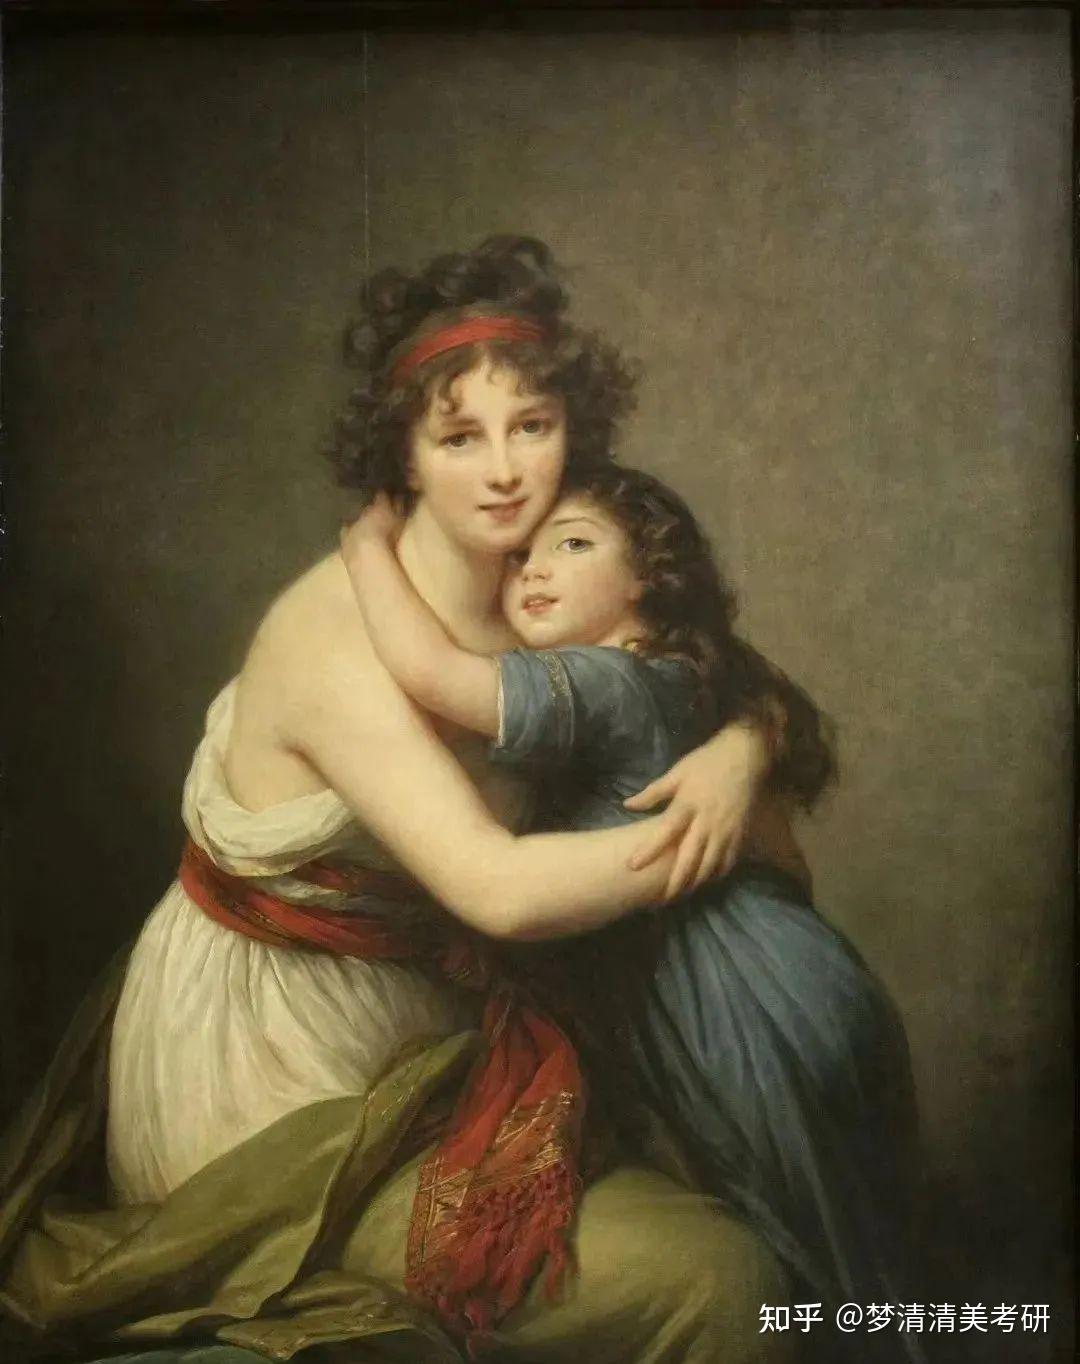 维吉·勒布伦 法国 1789年《母亲》斯坦尼斯拉夫·维斯皮安斯基 波兰